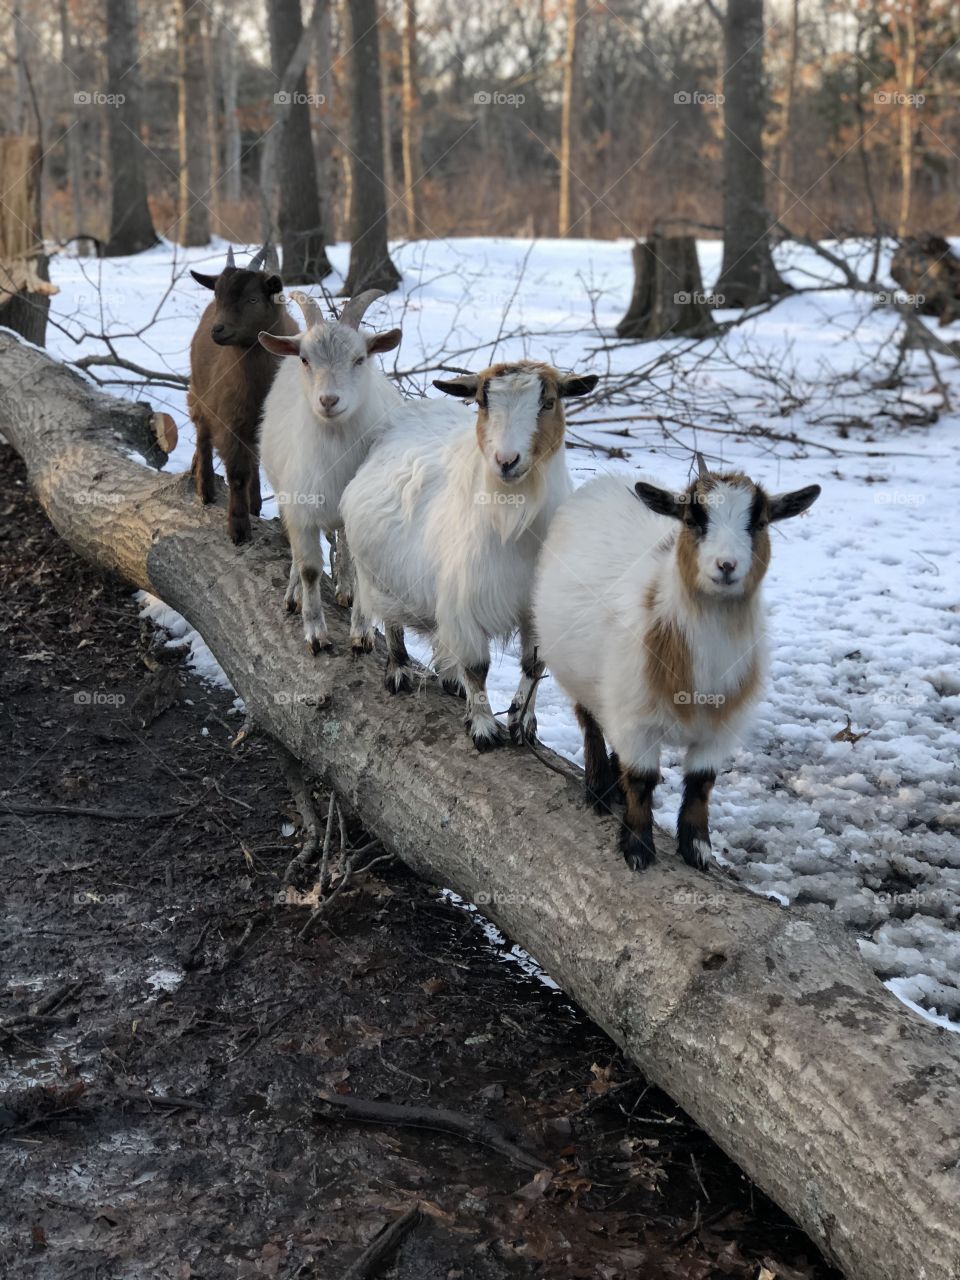 It’s a goat line up